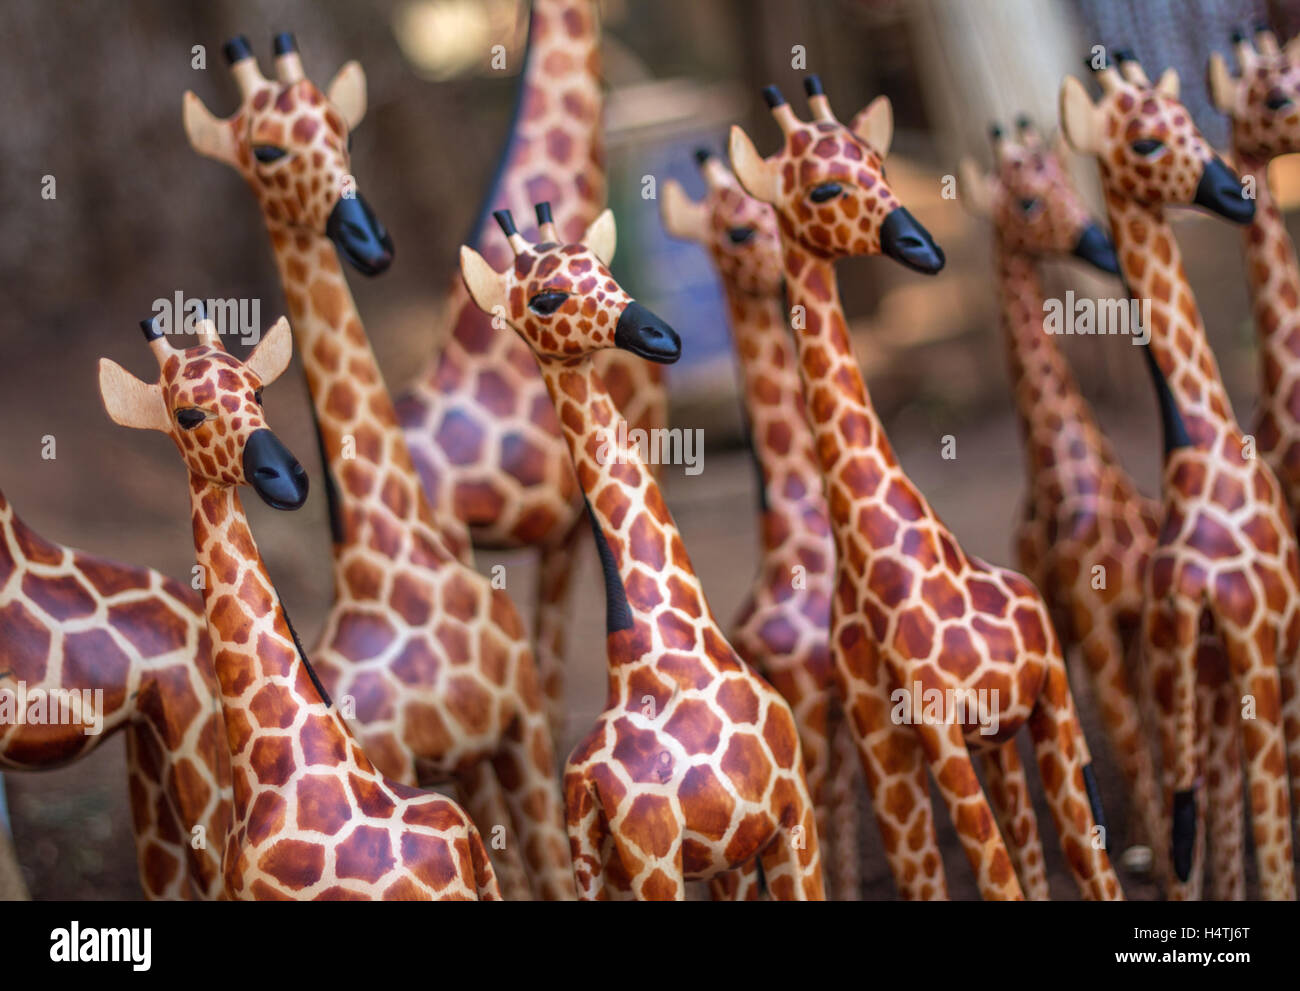 Una giraffa di legno si distingue nella folla di sculture simili poste in diagonale attraverso il telaio per una prospettiva unica Foto Stock